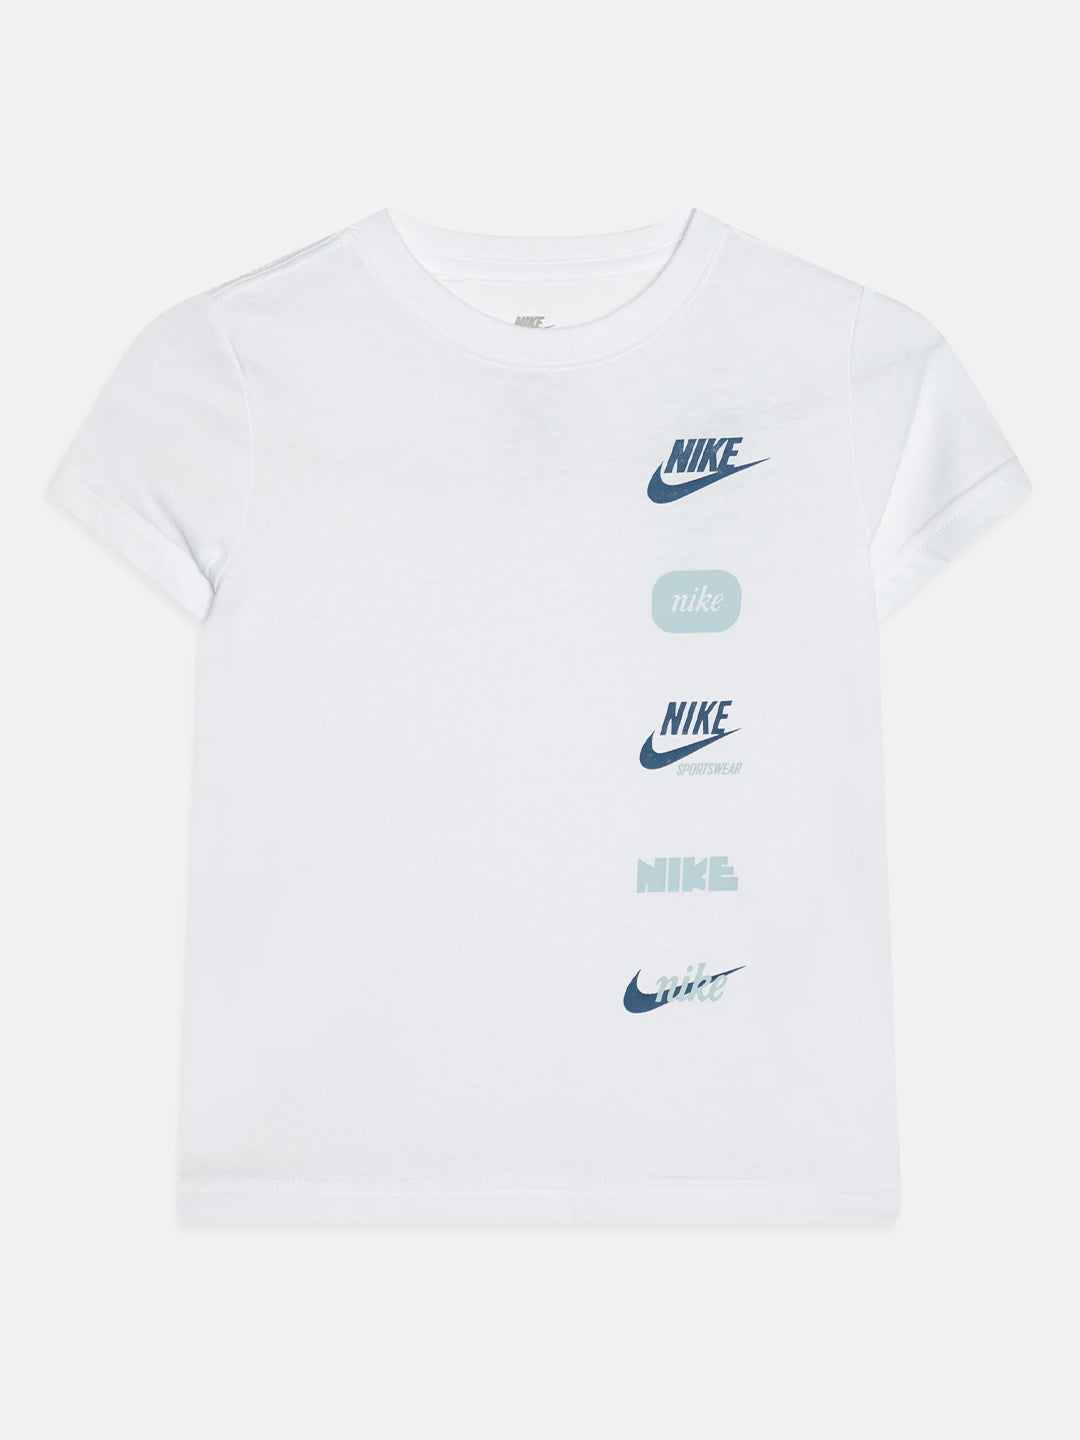 Nike t-shirt kids bianco multilogo blu